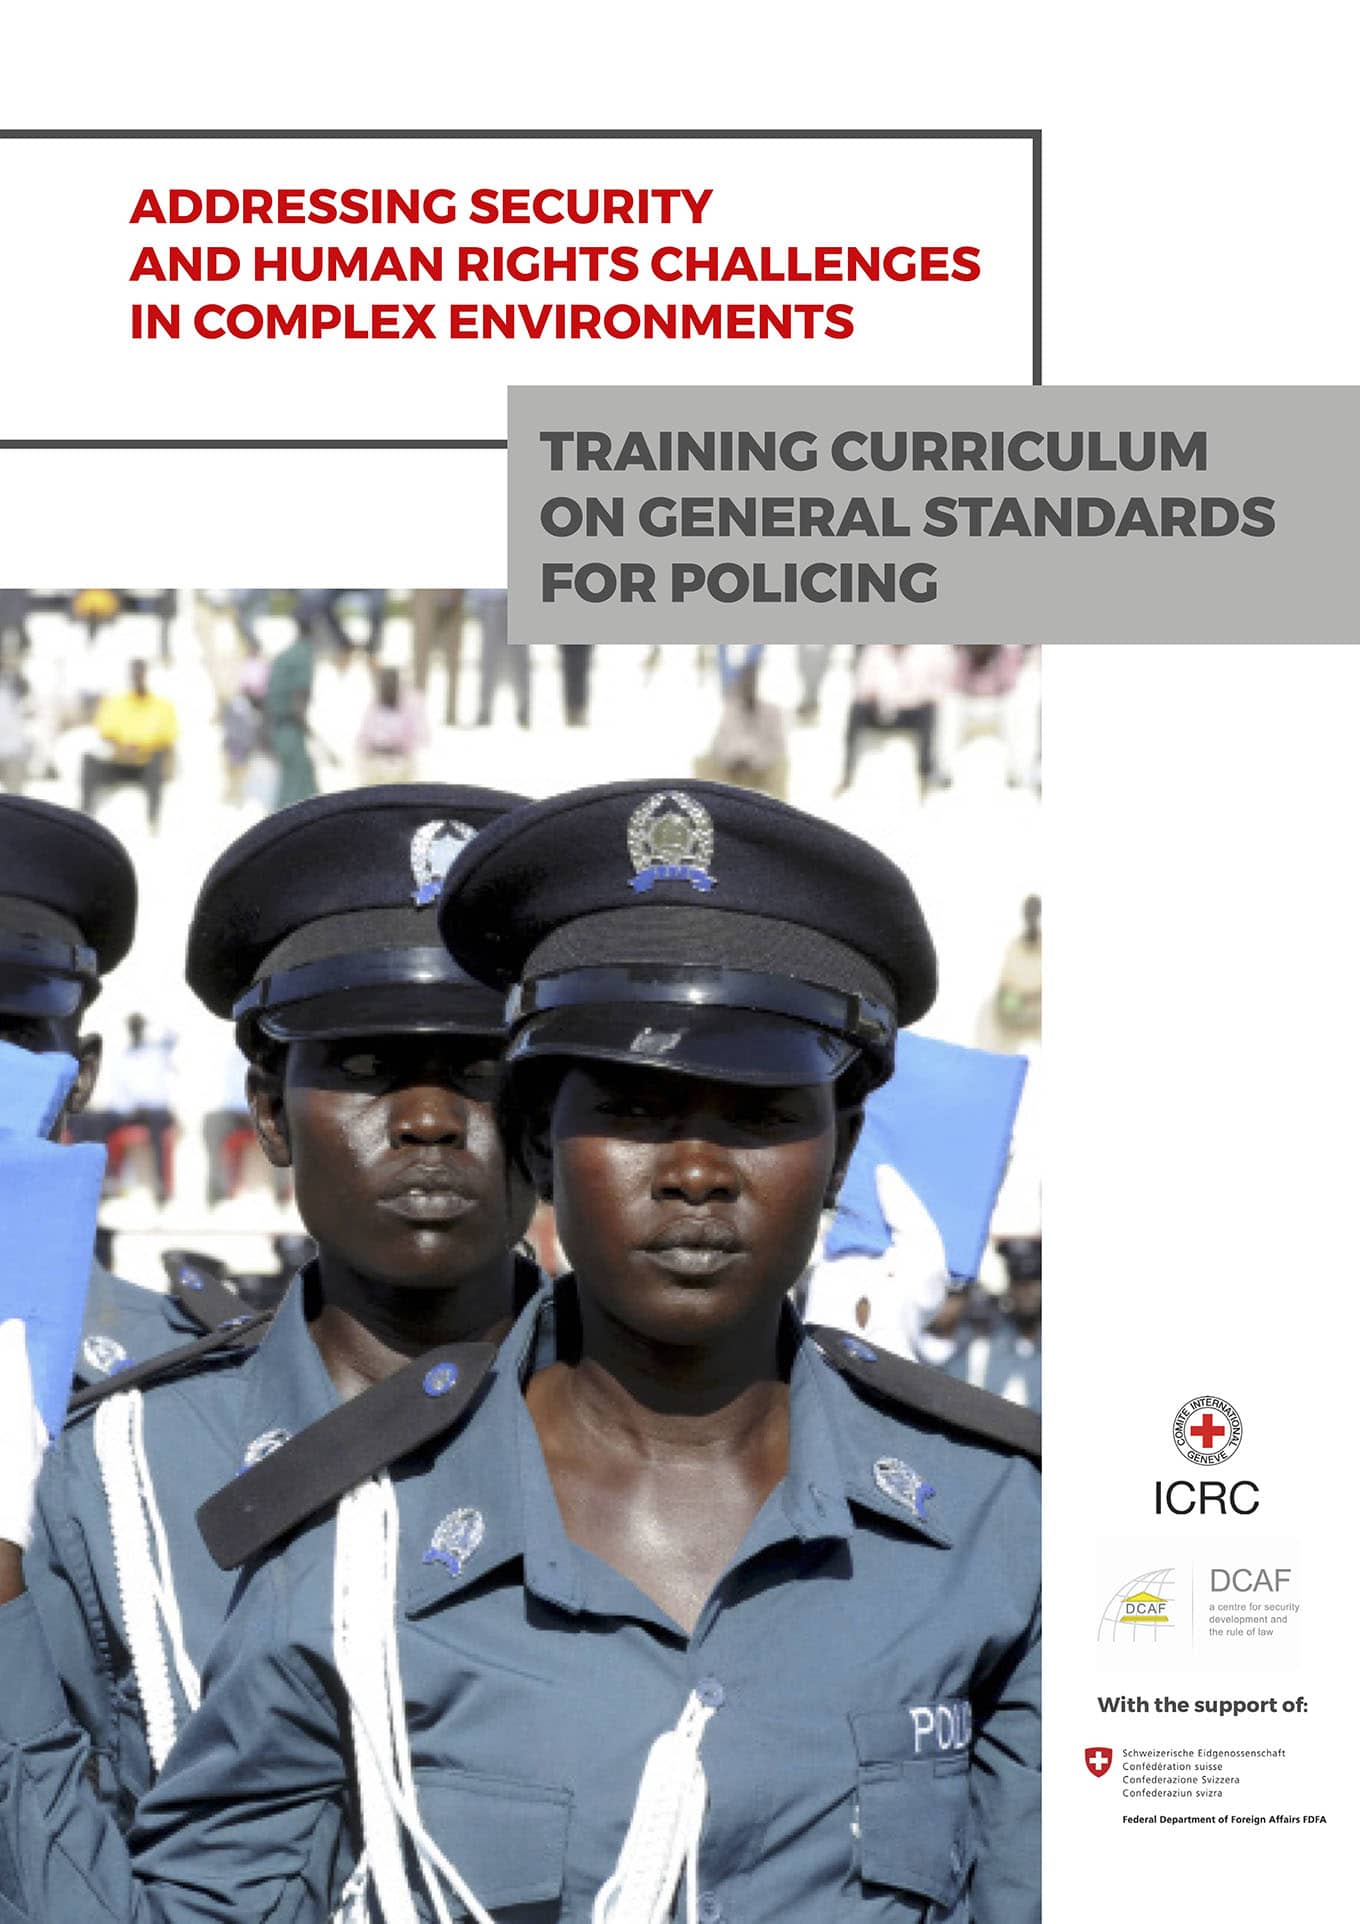 Programme de formation sur les normes générales relatives au maintien de l'ordre (DCAF et CICR, Septembre 2018)